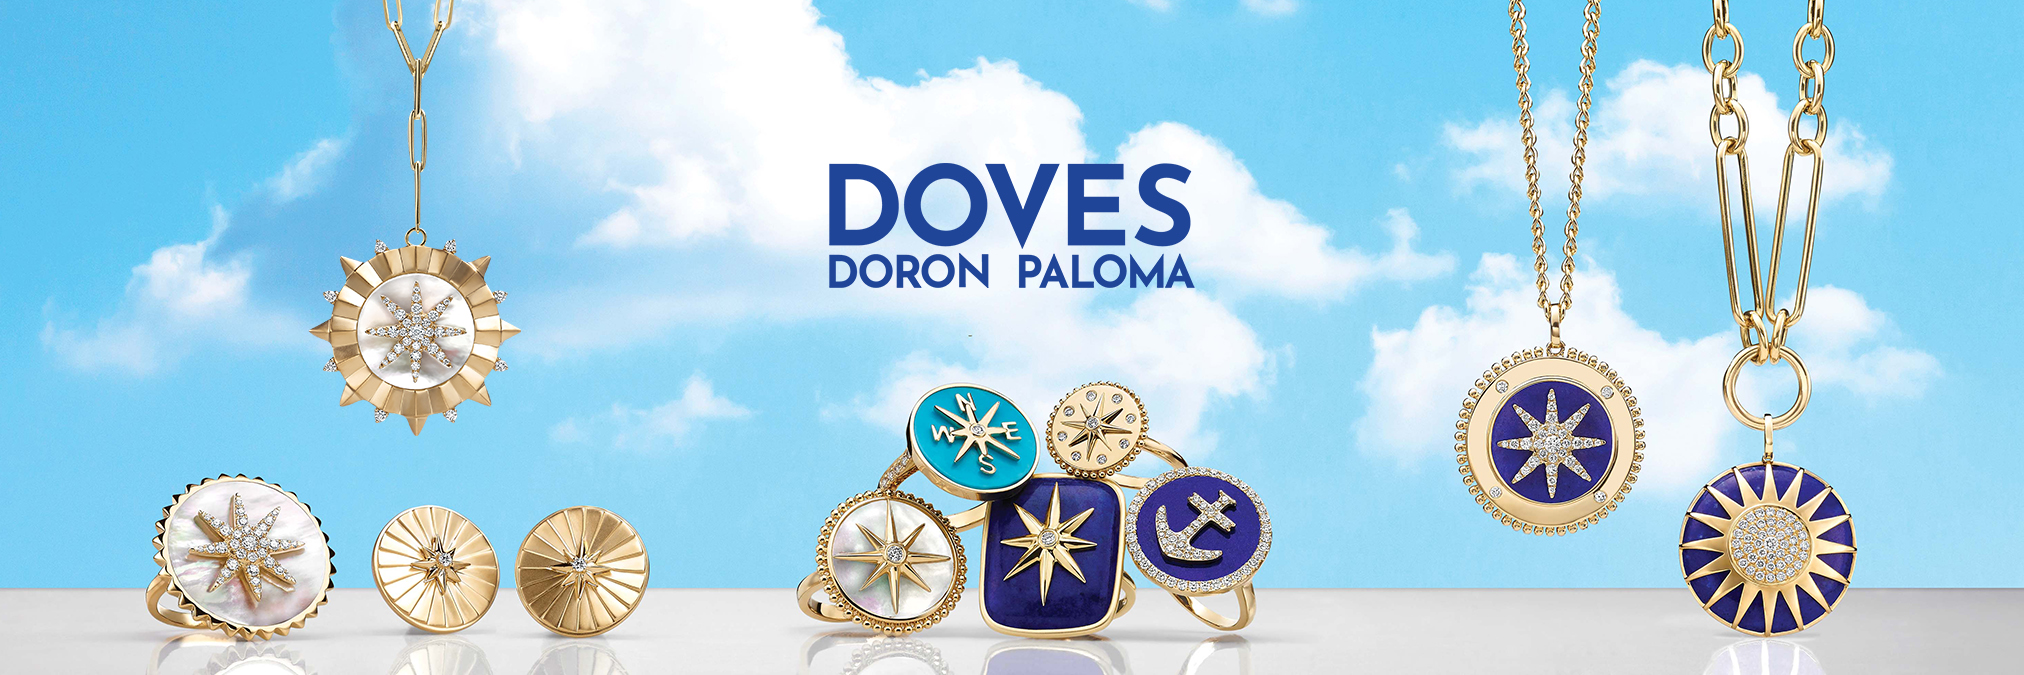 Costello Jewelry Company Doves by Doron Paloma